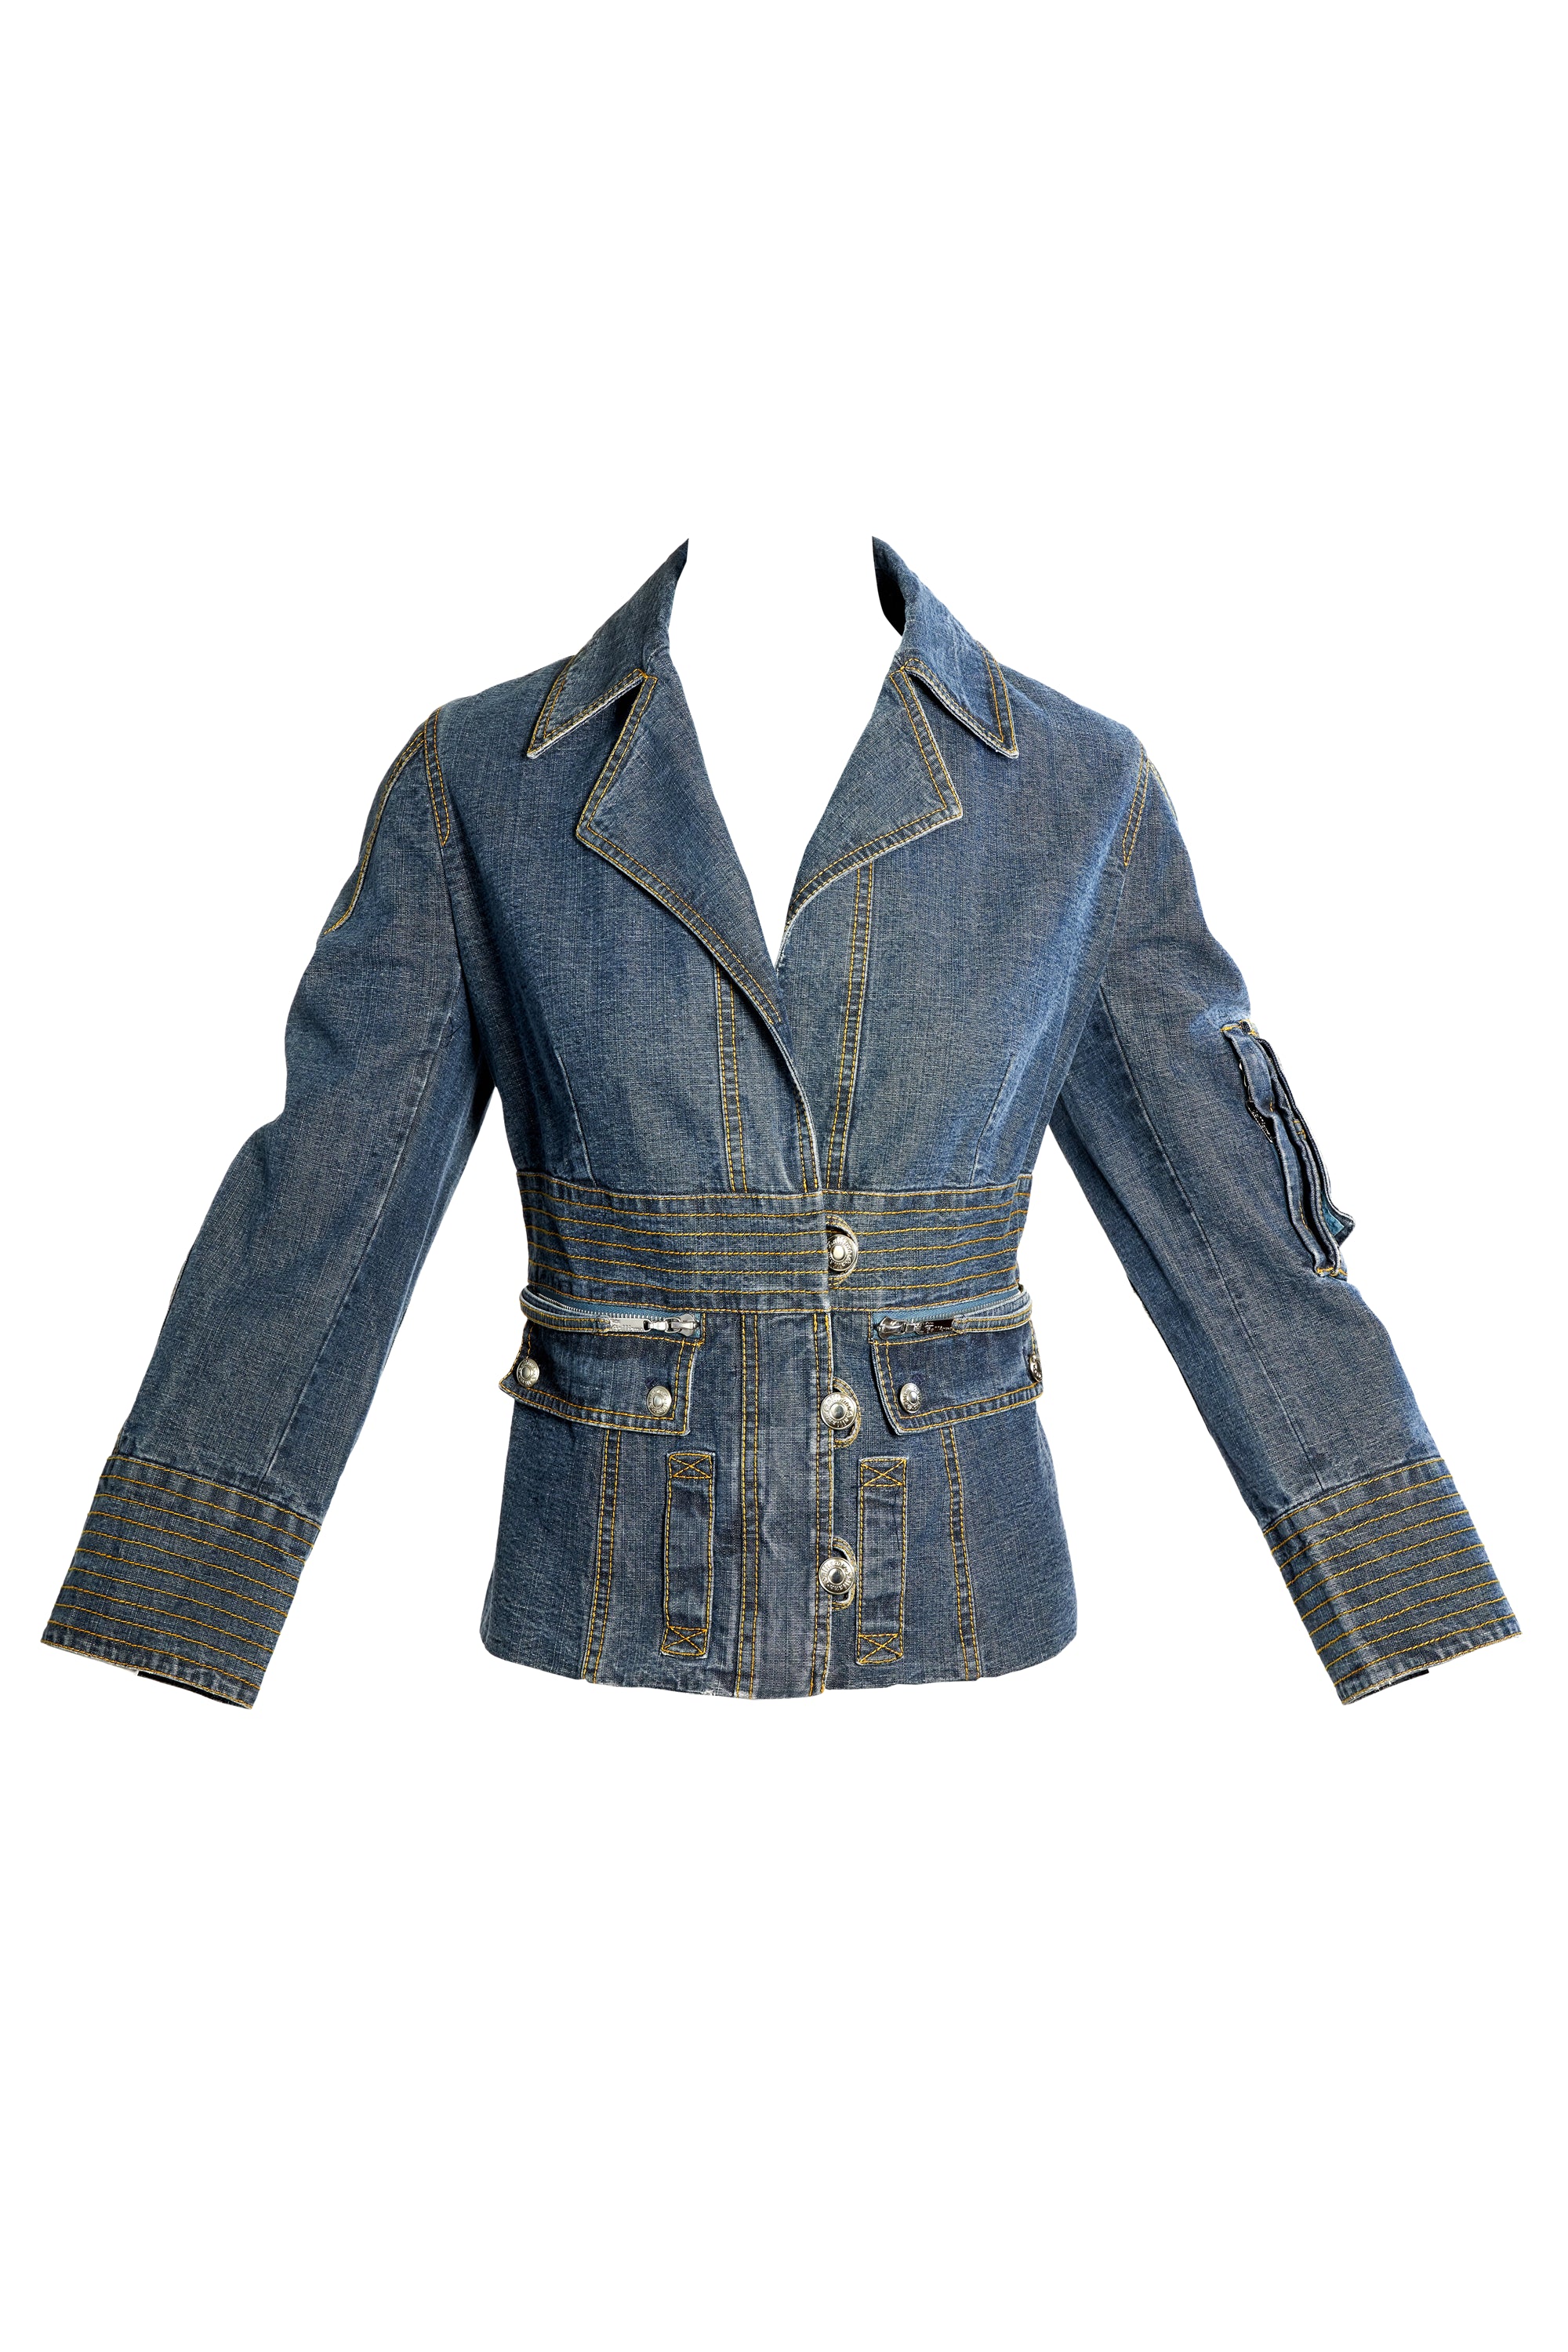 John Galliano Vintage Y2K Cargo Jean Jacket Size 42/6